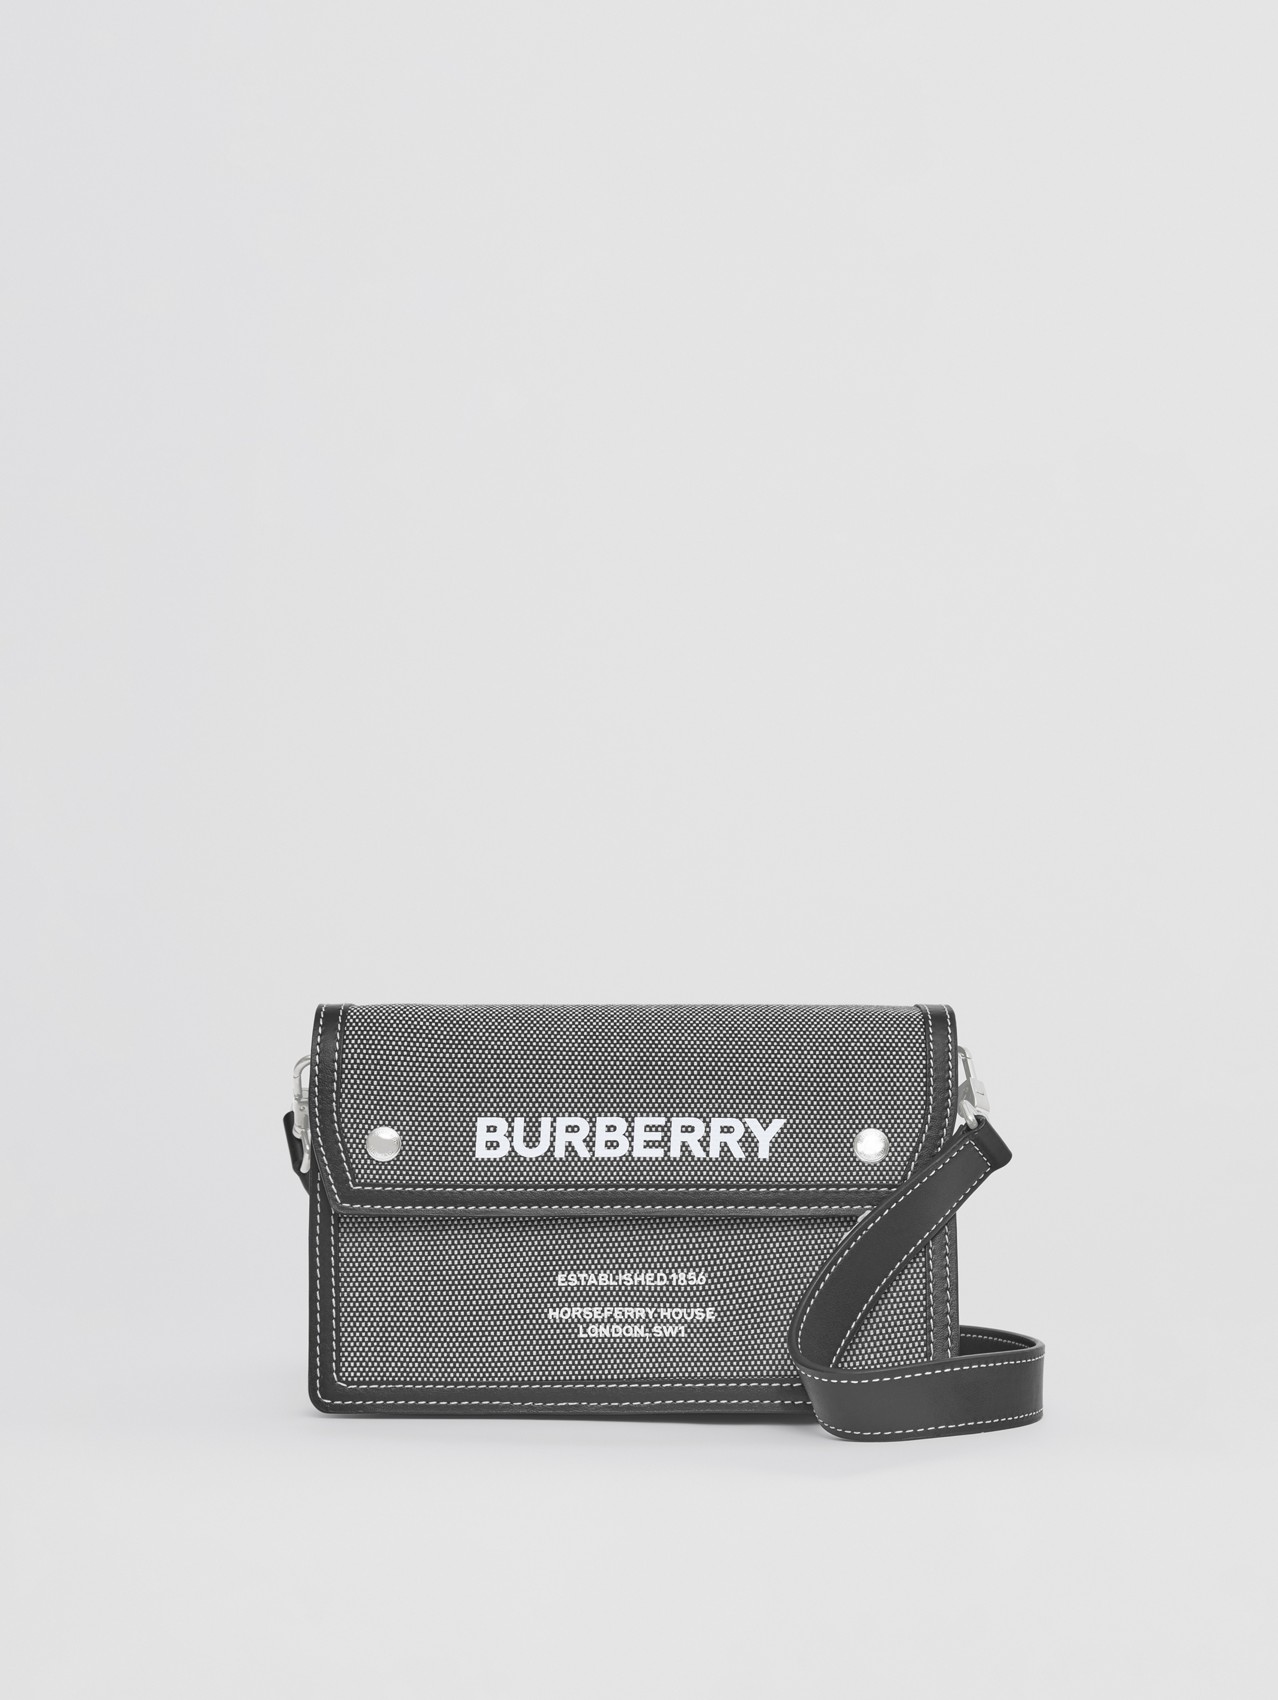 Crossbody-Tasche aus Canvas mit Horseferry-Schriftzug und Leder (Schwarz/grau)